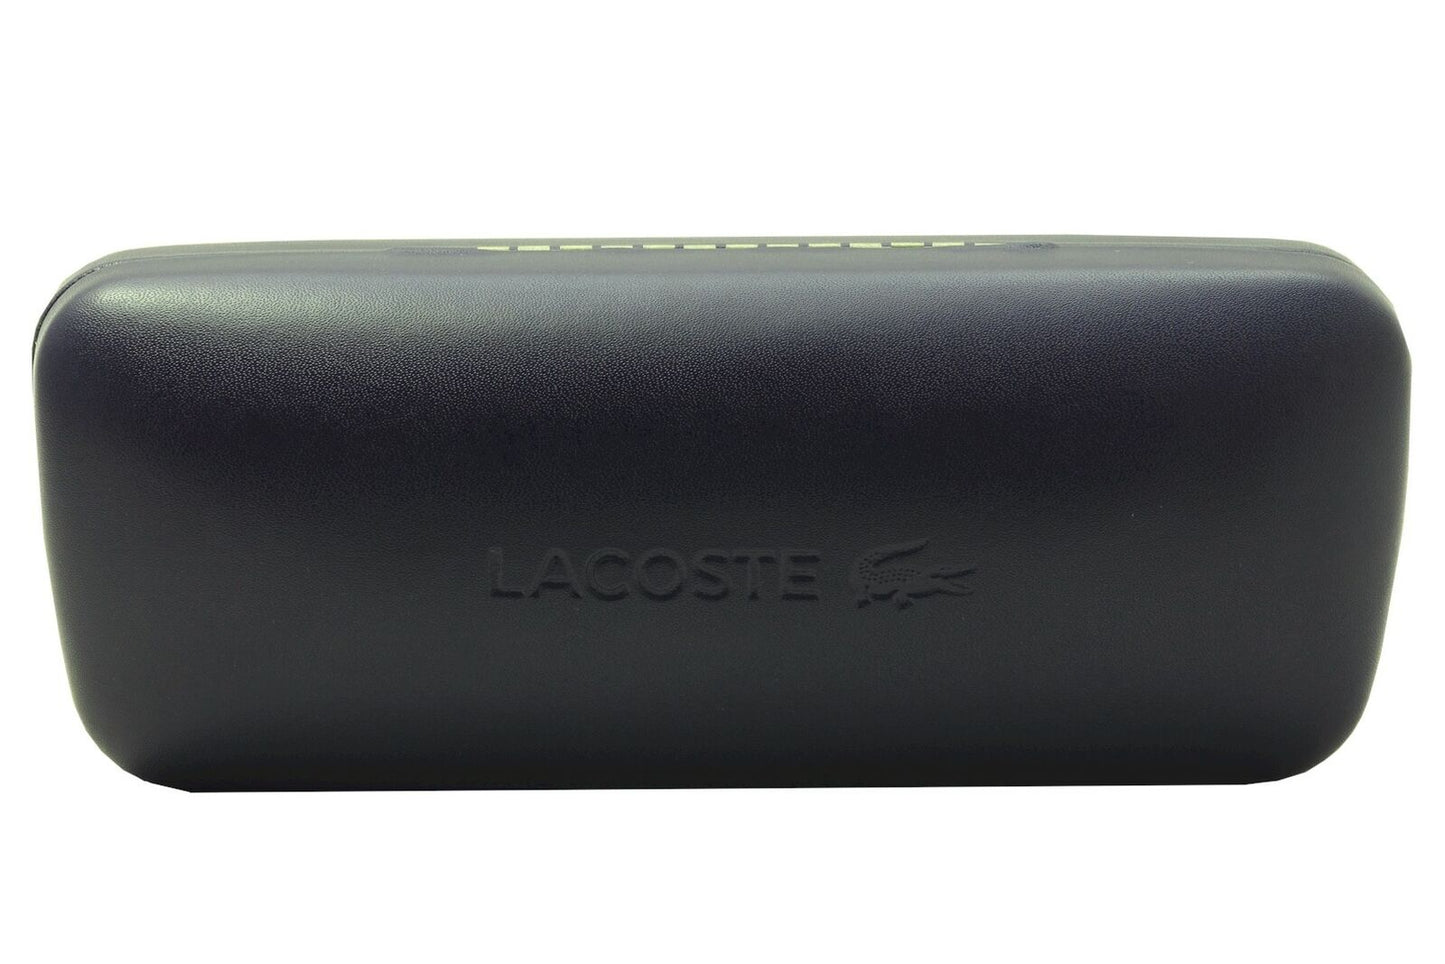 Lacoste L708S-35 50mm New Sunglasses